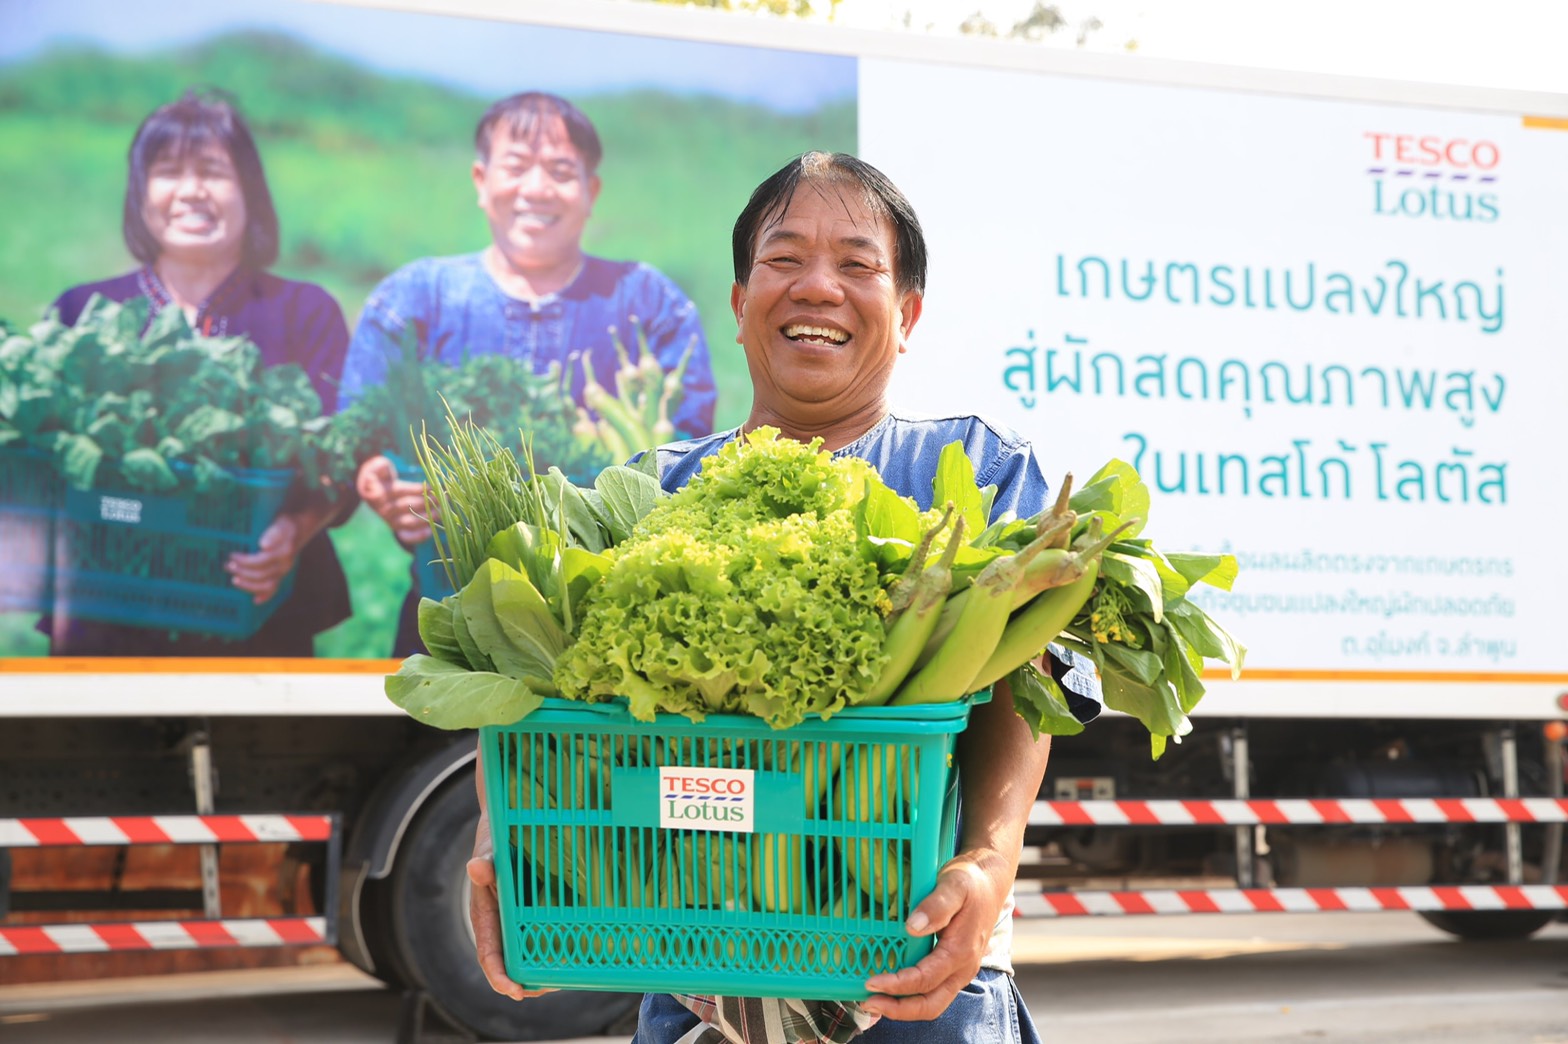 เทสโก้ โลตัส ภูมิใจรับซื้อผักตรงจากเกษตรกรครอบคลุมทั้ง 4 ภาคทั่วไทย เดินหน้าขยายโครงการสู่เกษตรกร 1,000 รายภายในสิ้นปี พร้อมยกระดับคุณภาพผักไทย